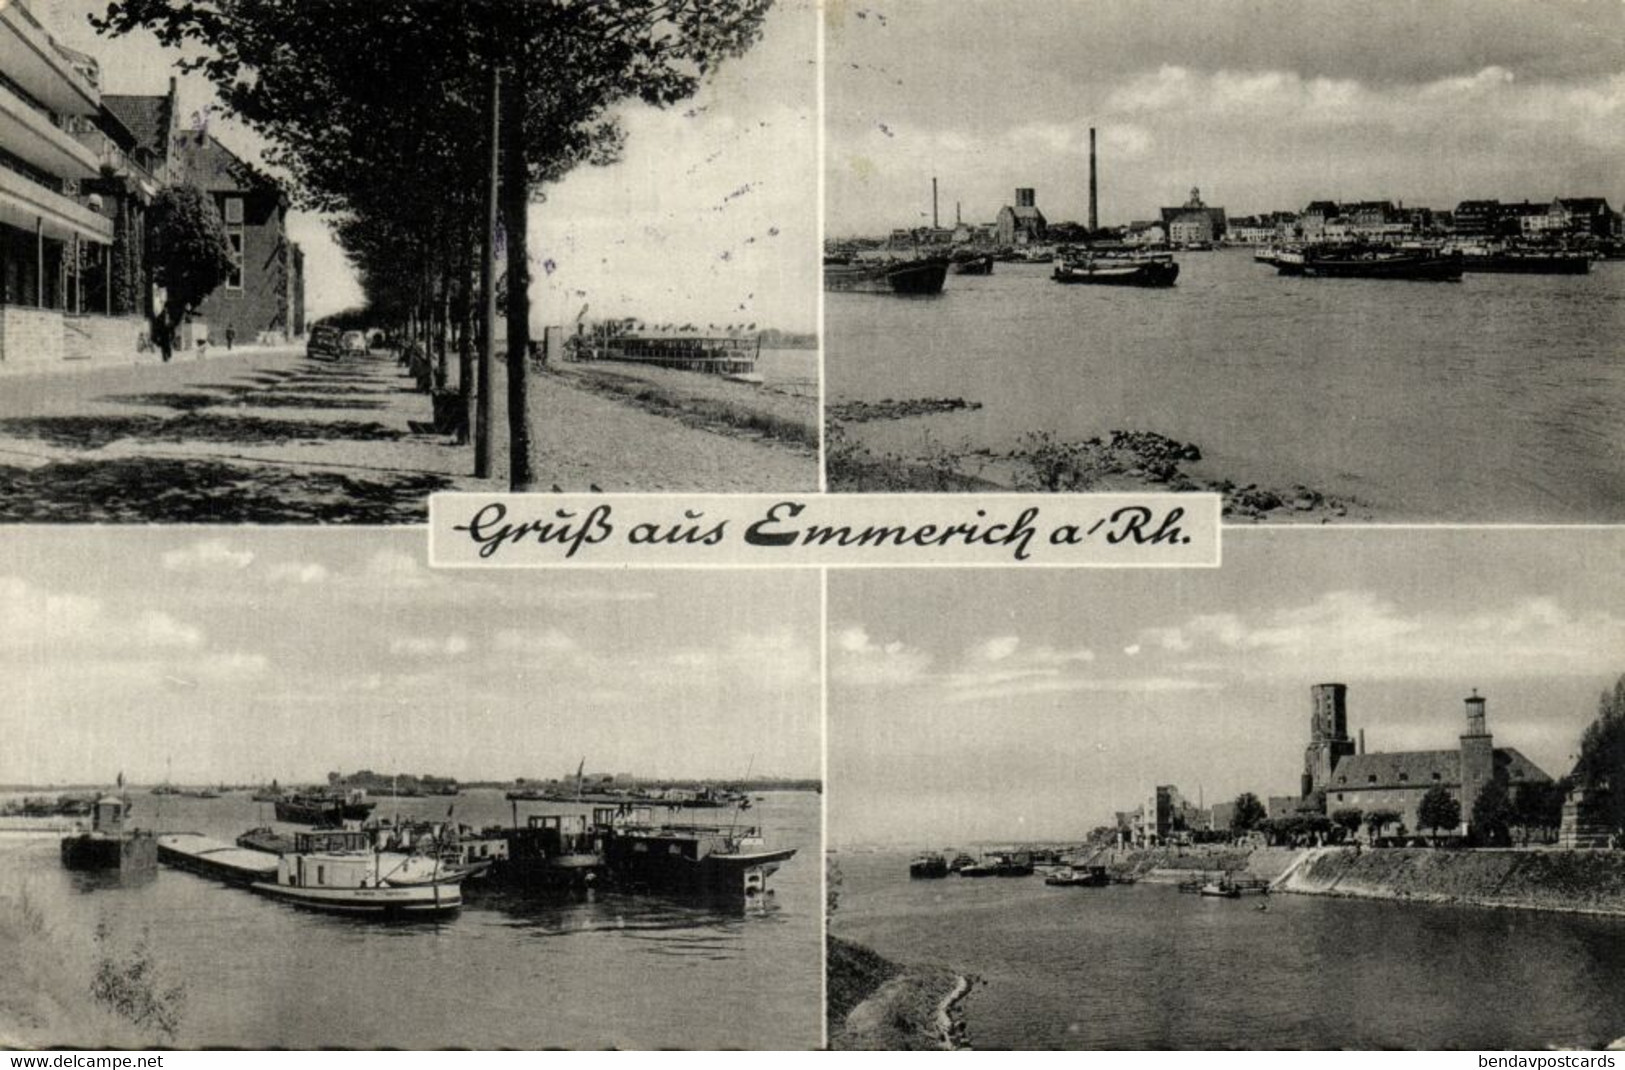 EMMERICH Am Rhein, Mehrbildkarte (1964) AK - Emmerich